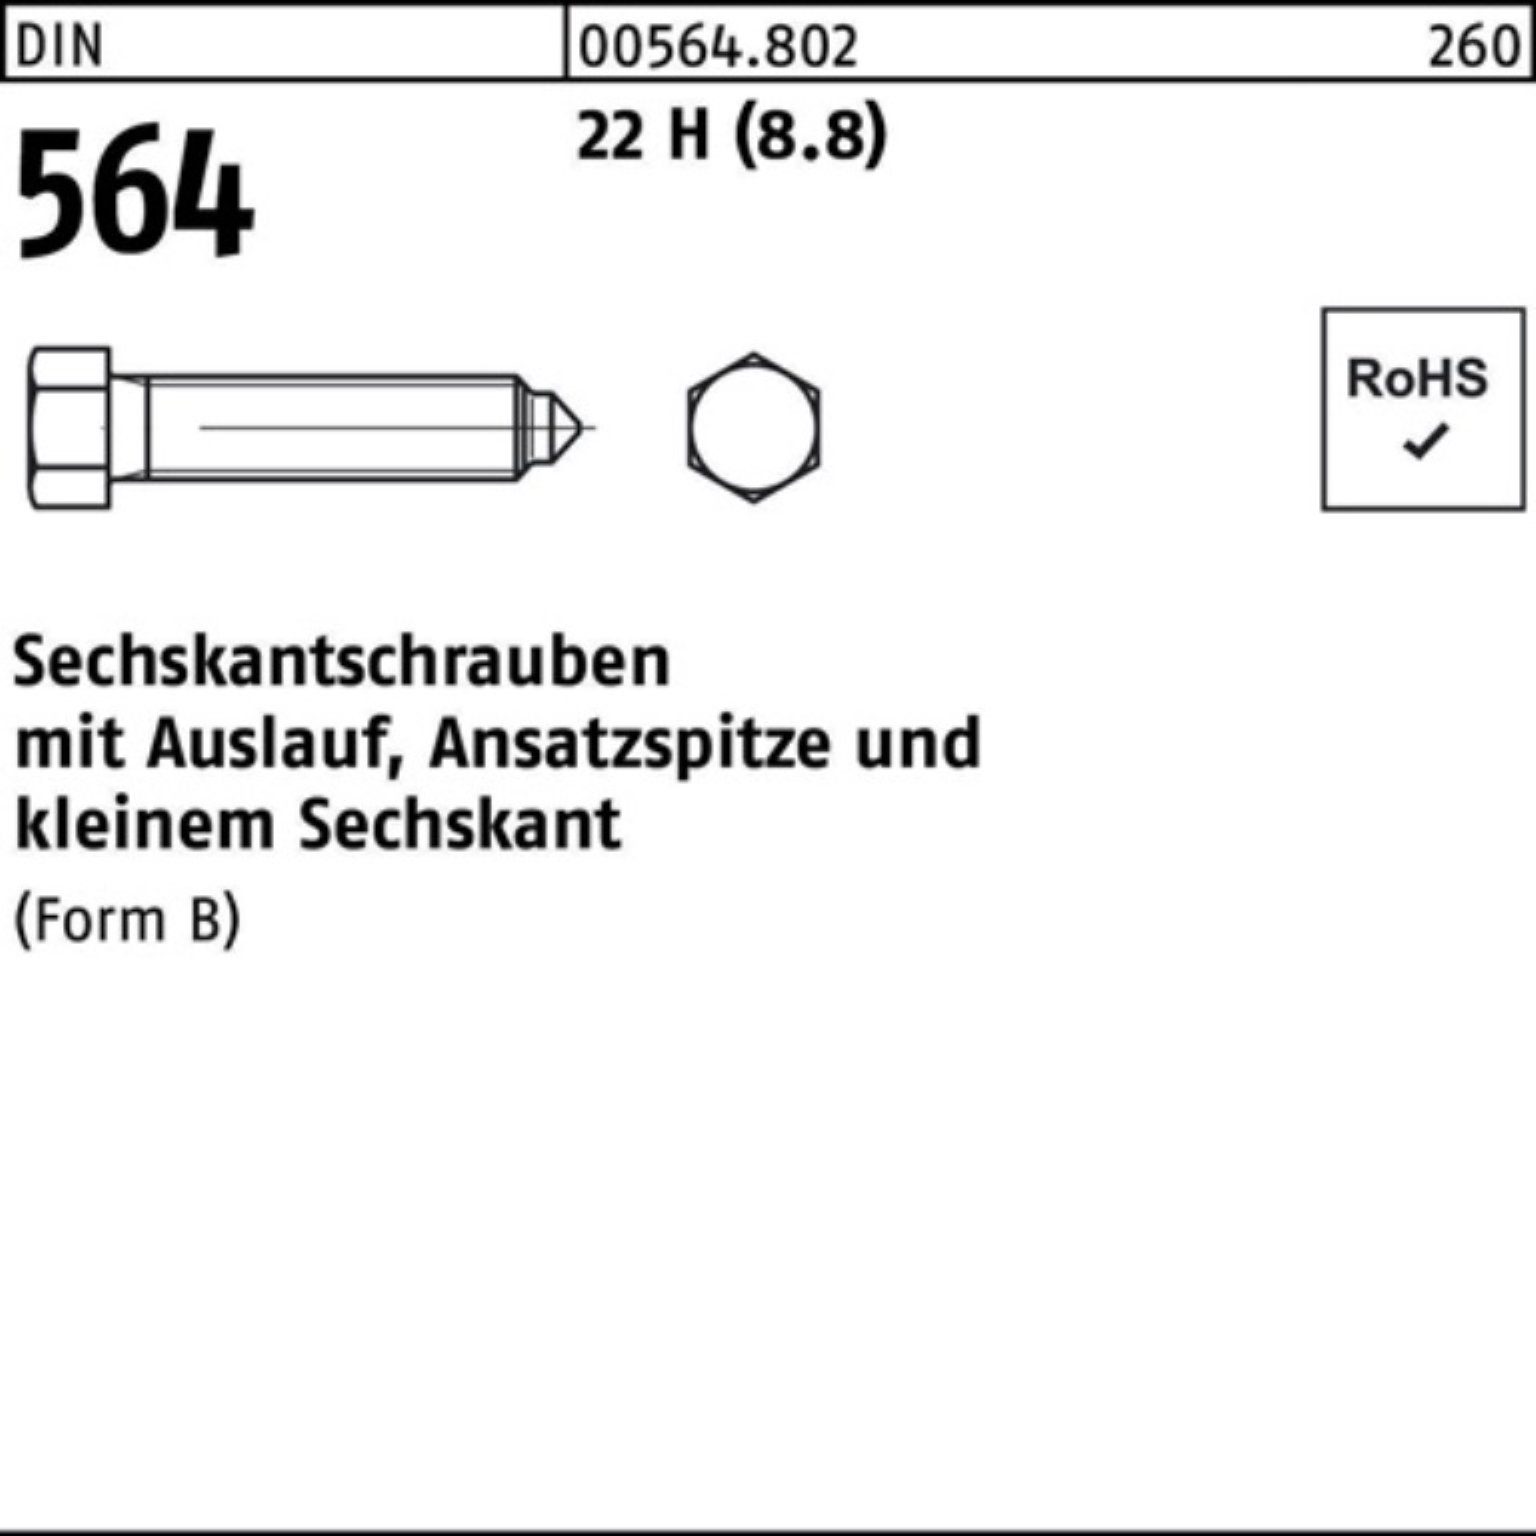 564 Pack Ansatzspitze/Auslauf BM 22 12x Sechskantschraube DIN 45 Reyher Sechskantschraube 100er